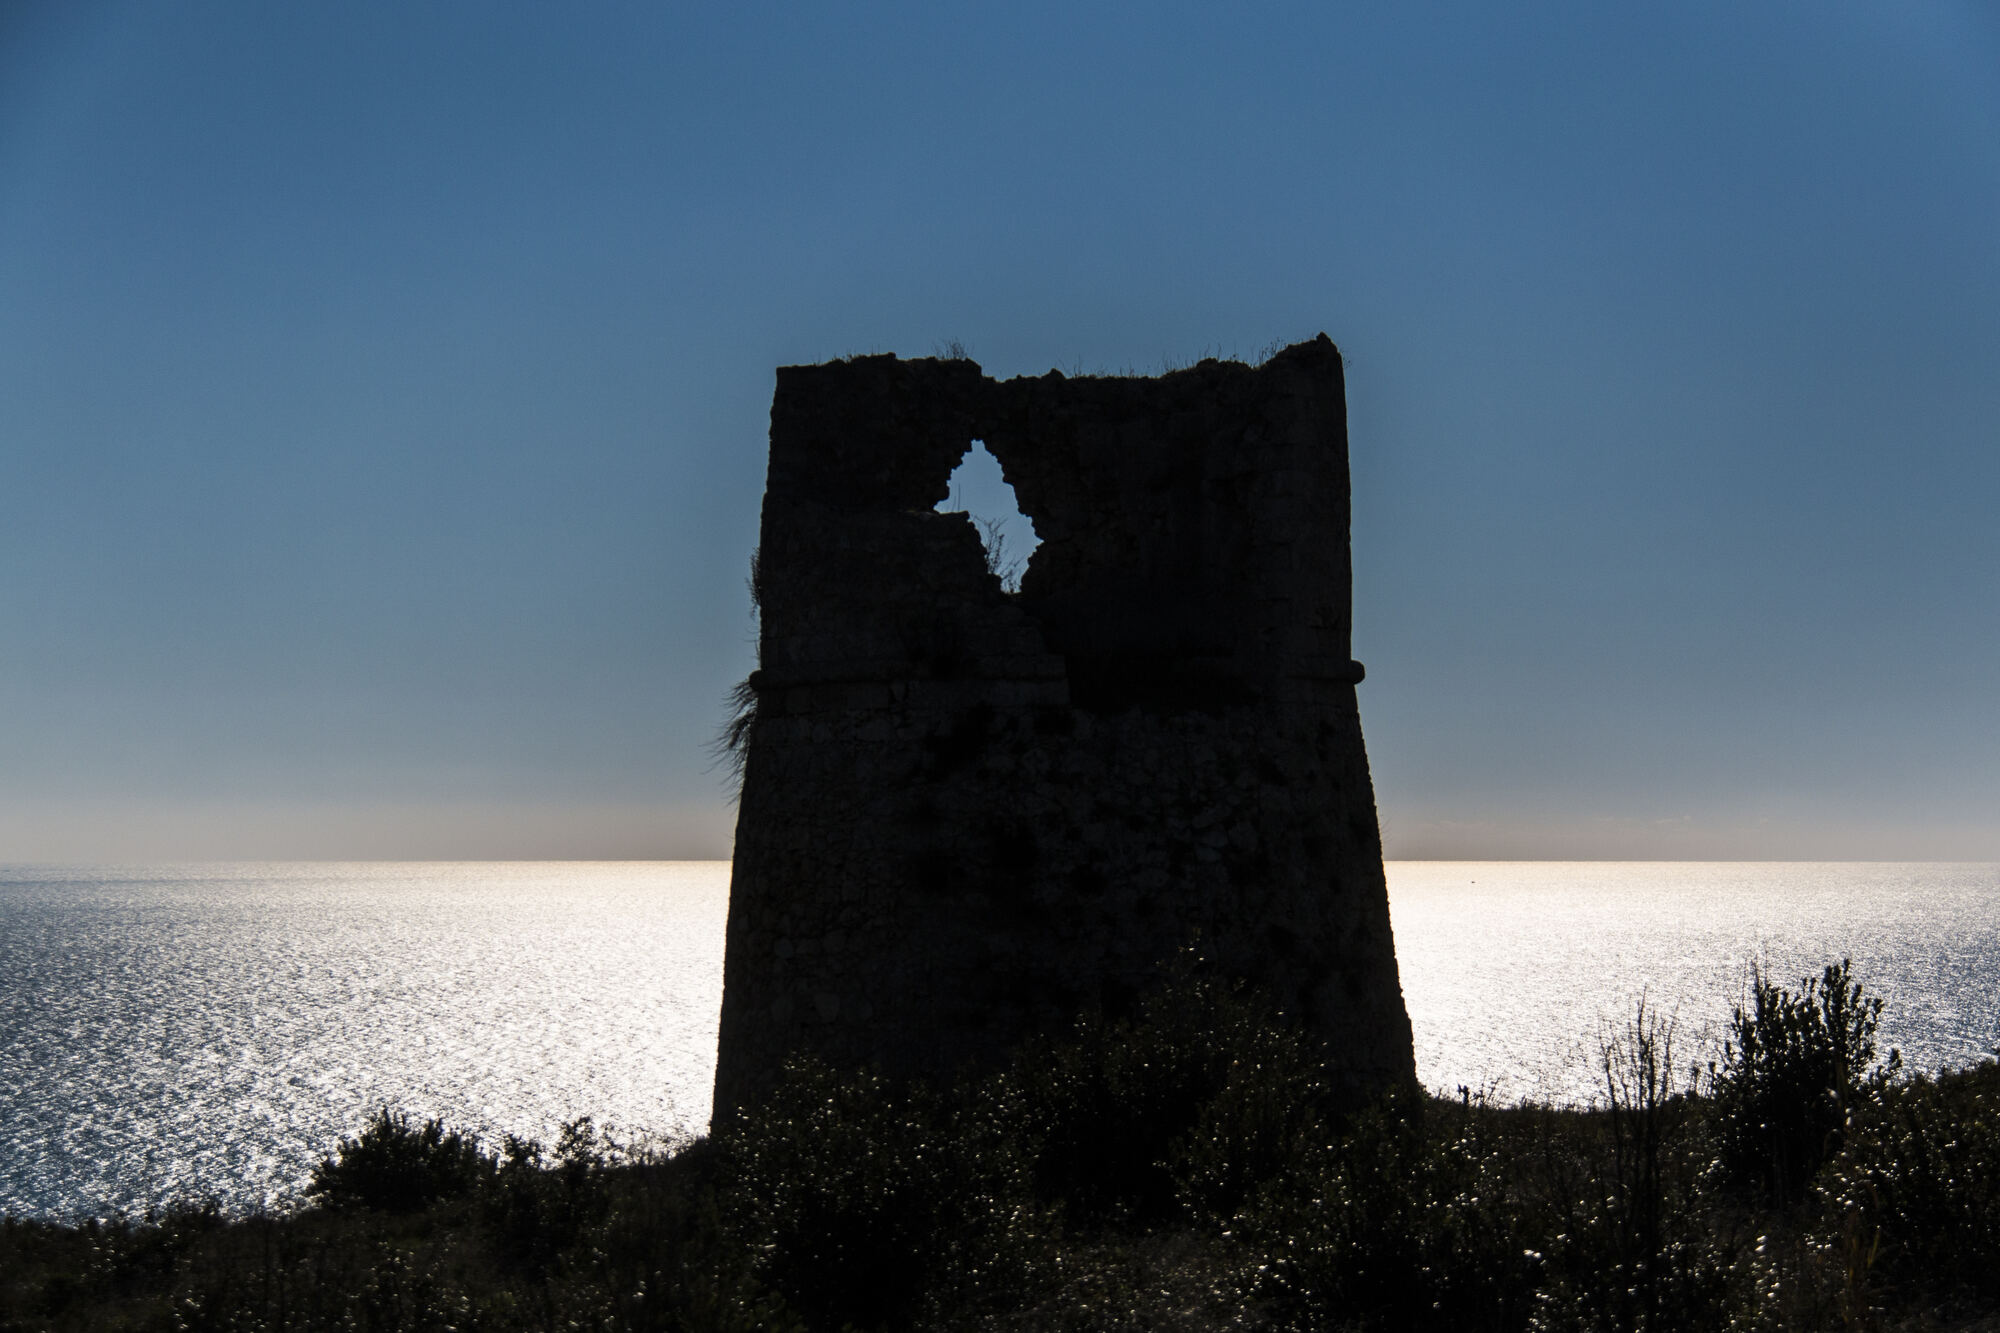 Spiagge in Salento: Marina di Torre Nasparo, una località balneare nel Parco Naturale Otranto-Santa Maria di Leuca, con scogliere impervie ma calette nascoste e mare incontaminato.